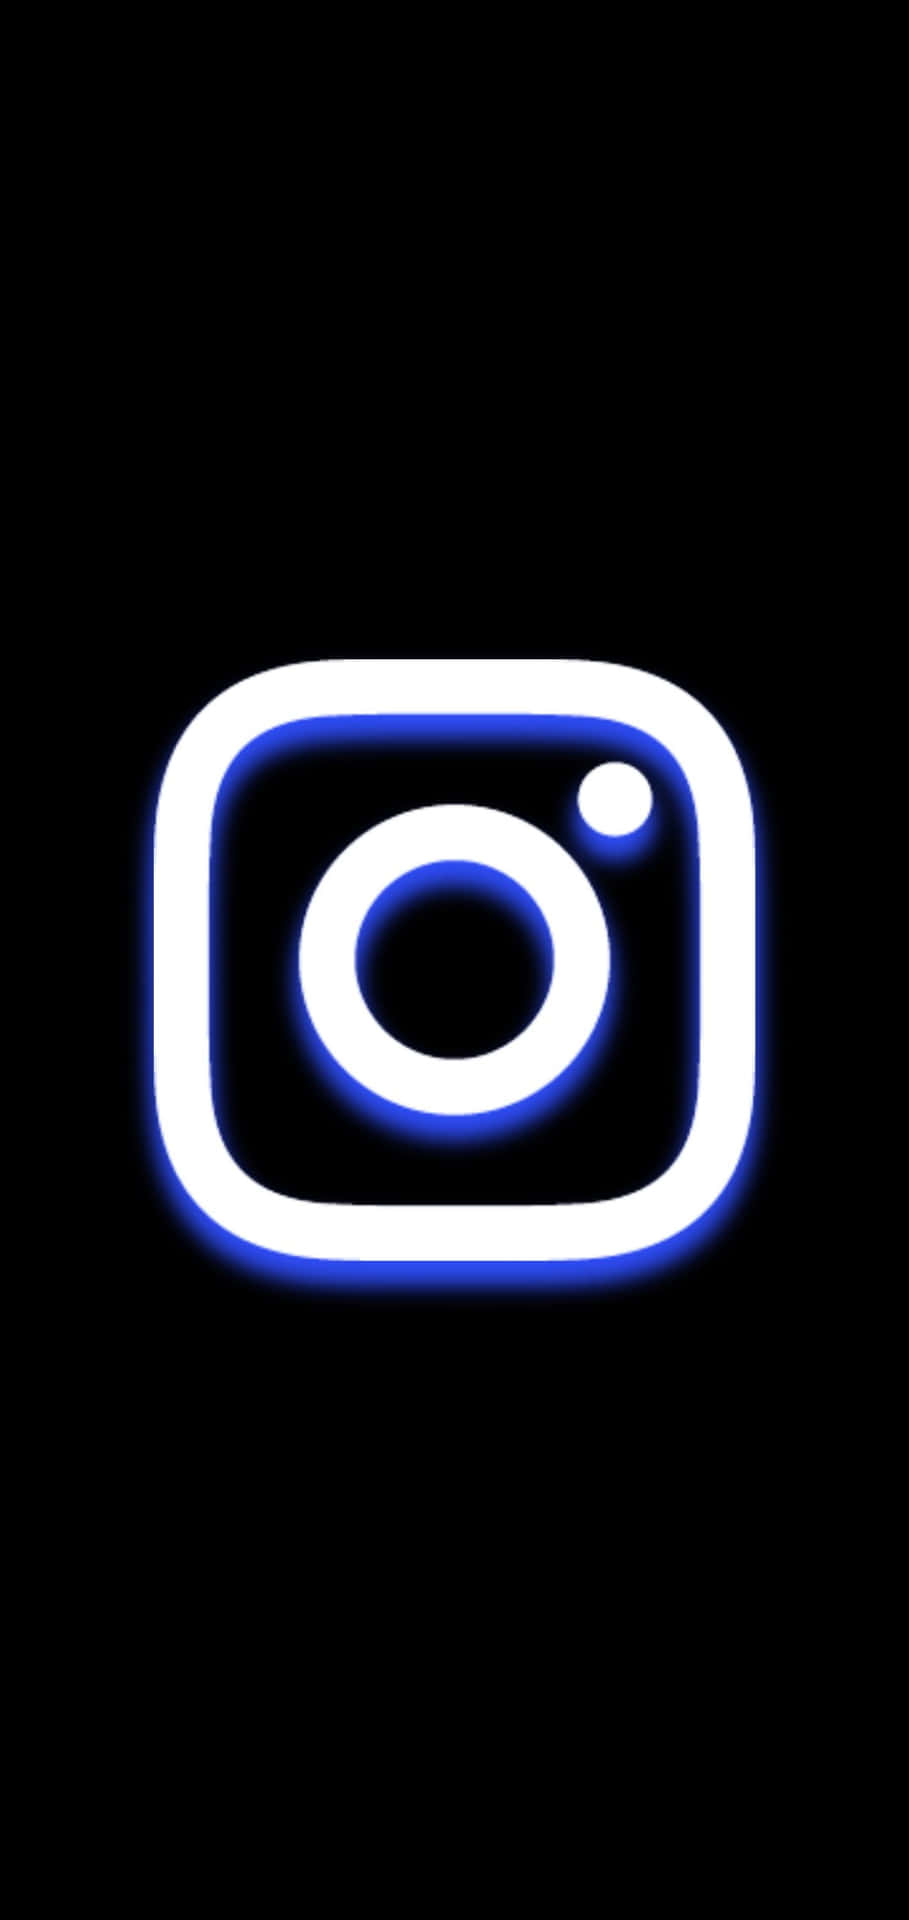 Logodi Instagram Bianco E Blu Su Sfondo Nero.